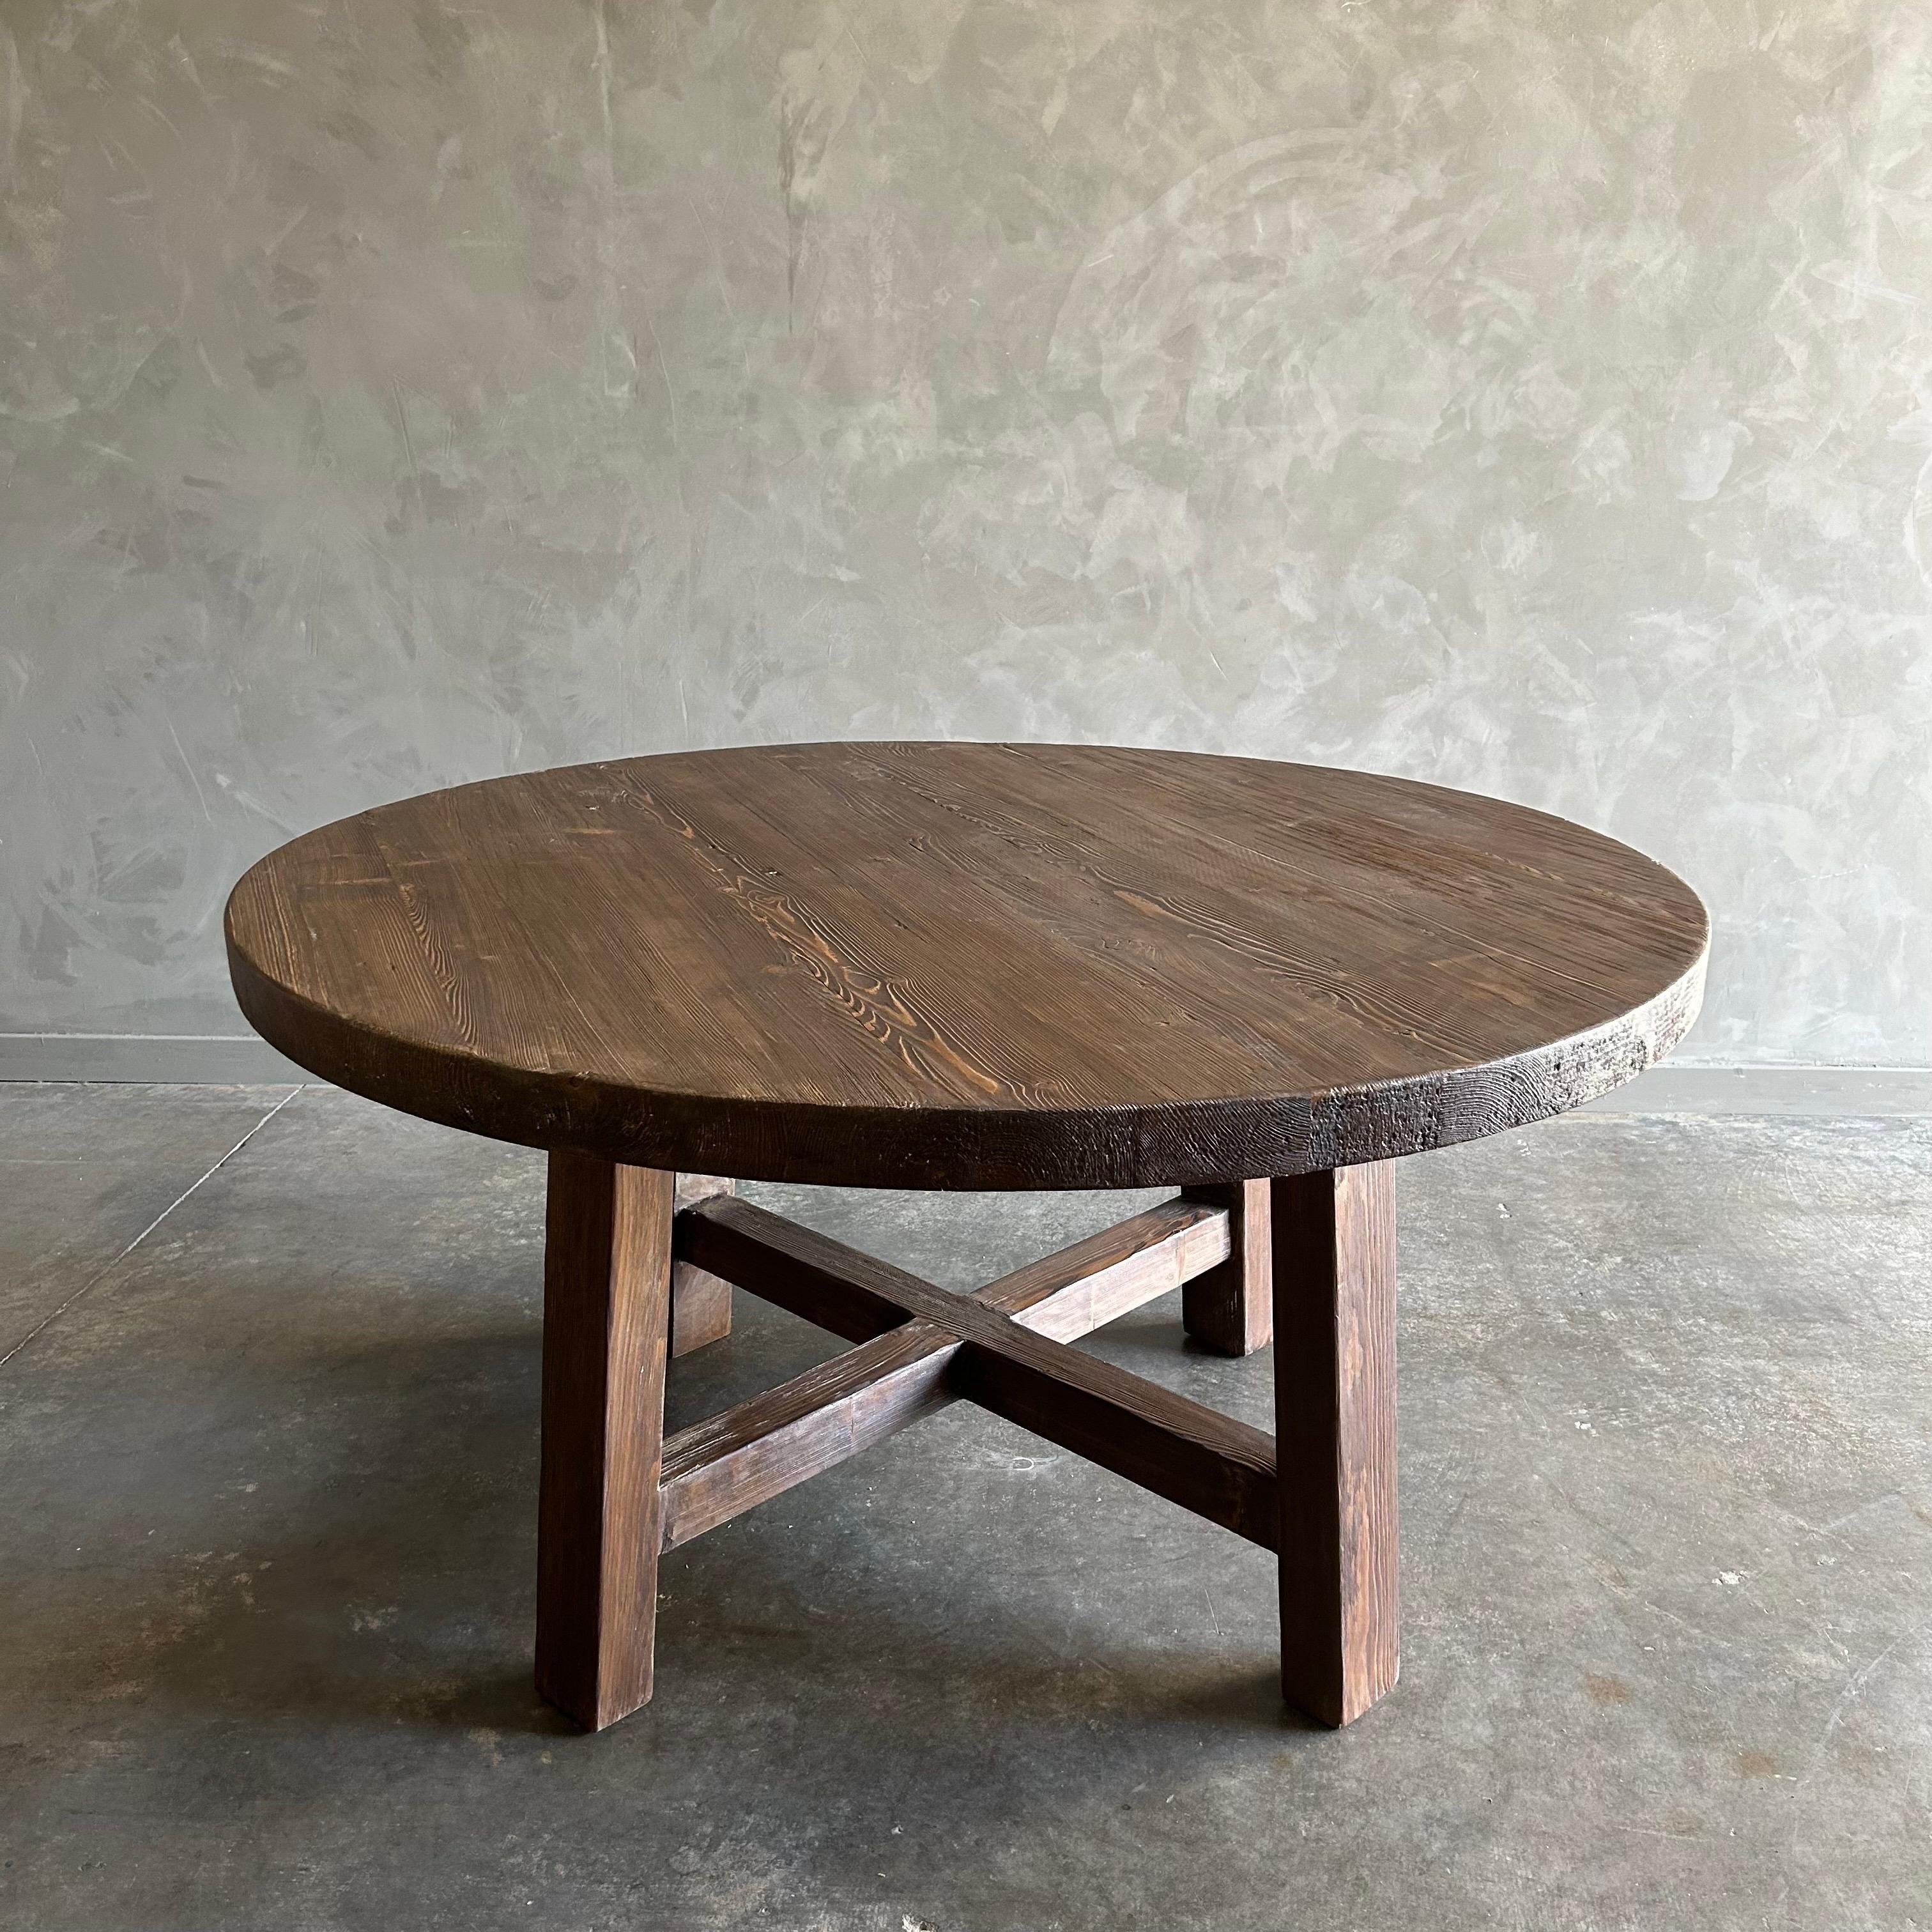 BH COLLECTION : Table de salle à manger Hana
Ces vieux bois d'orme se présentent sous leur forme la plus primitive, la plus naturelle. Les méthodes de construction artisanales mettent en valeur le magnifique veinage du bois d'orme ainsi que les